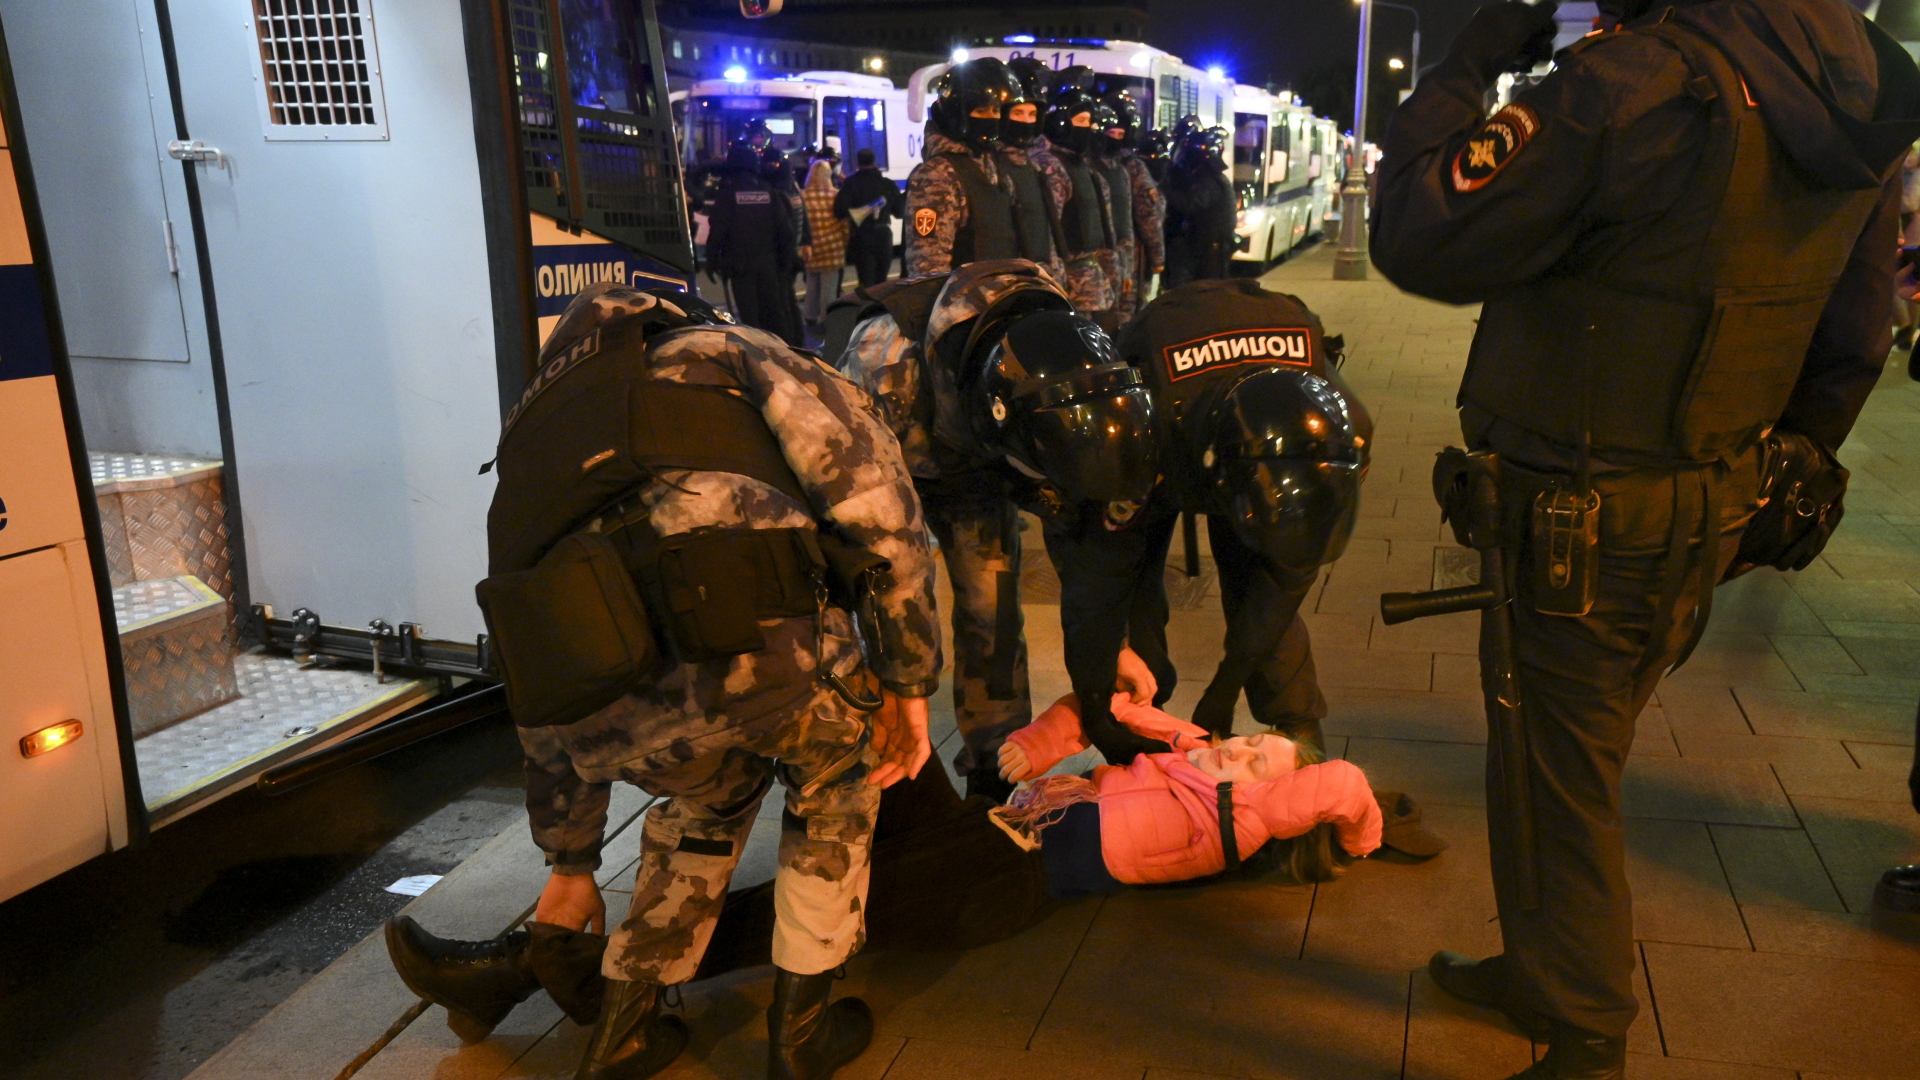 Polizisten in Moskau halten einen Demonstranten am Boden fest während einer Demonstration gegen die Mobilisierung. | dpa